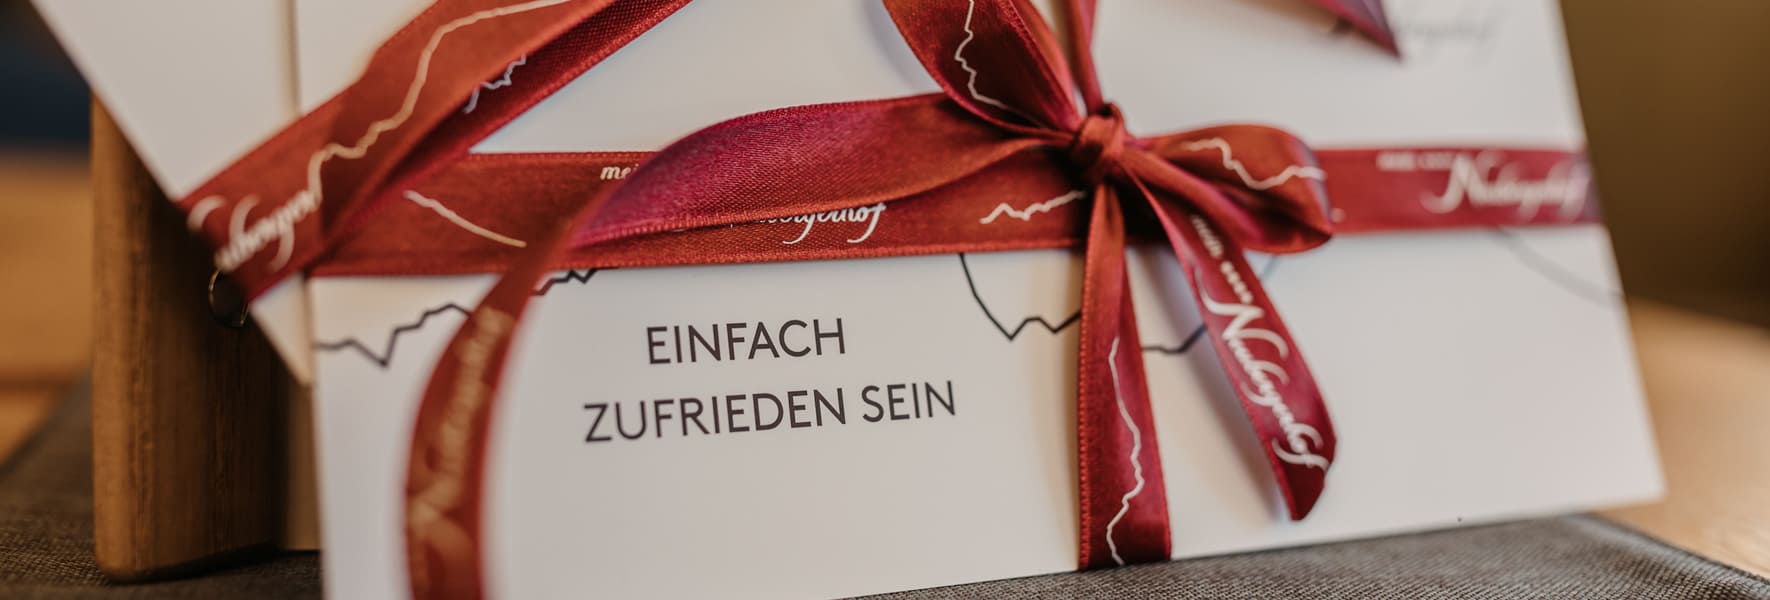 Neubergerhof gift vouchers © Selina Flasch